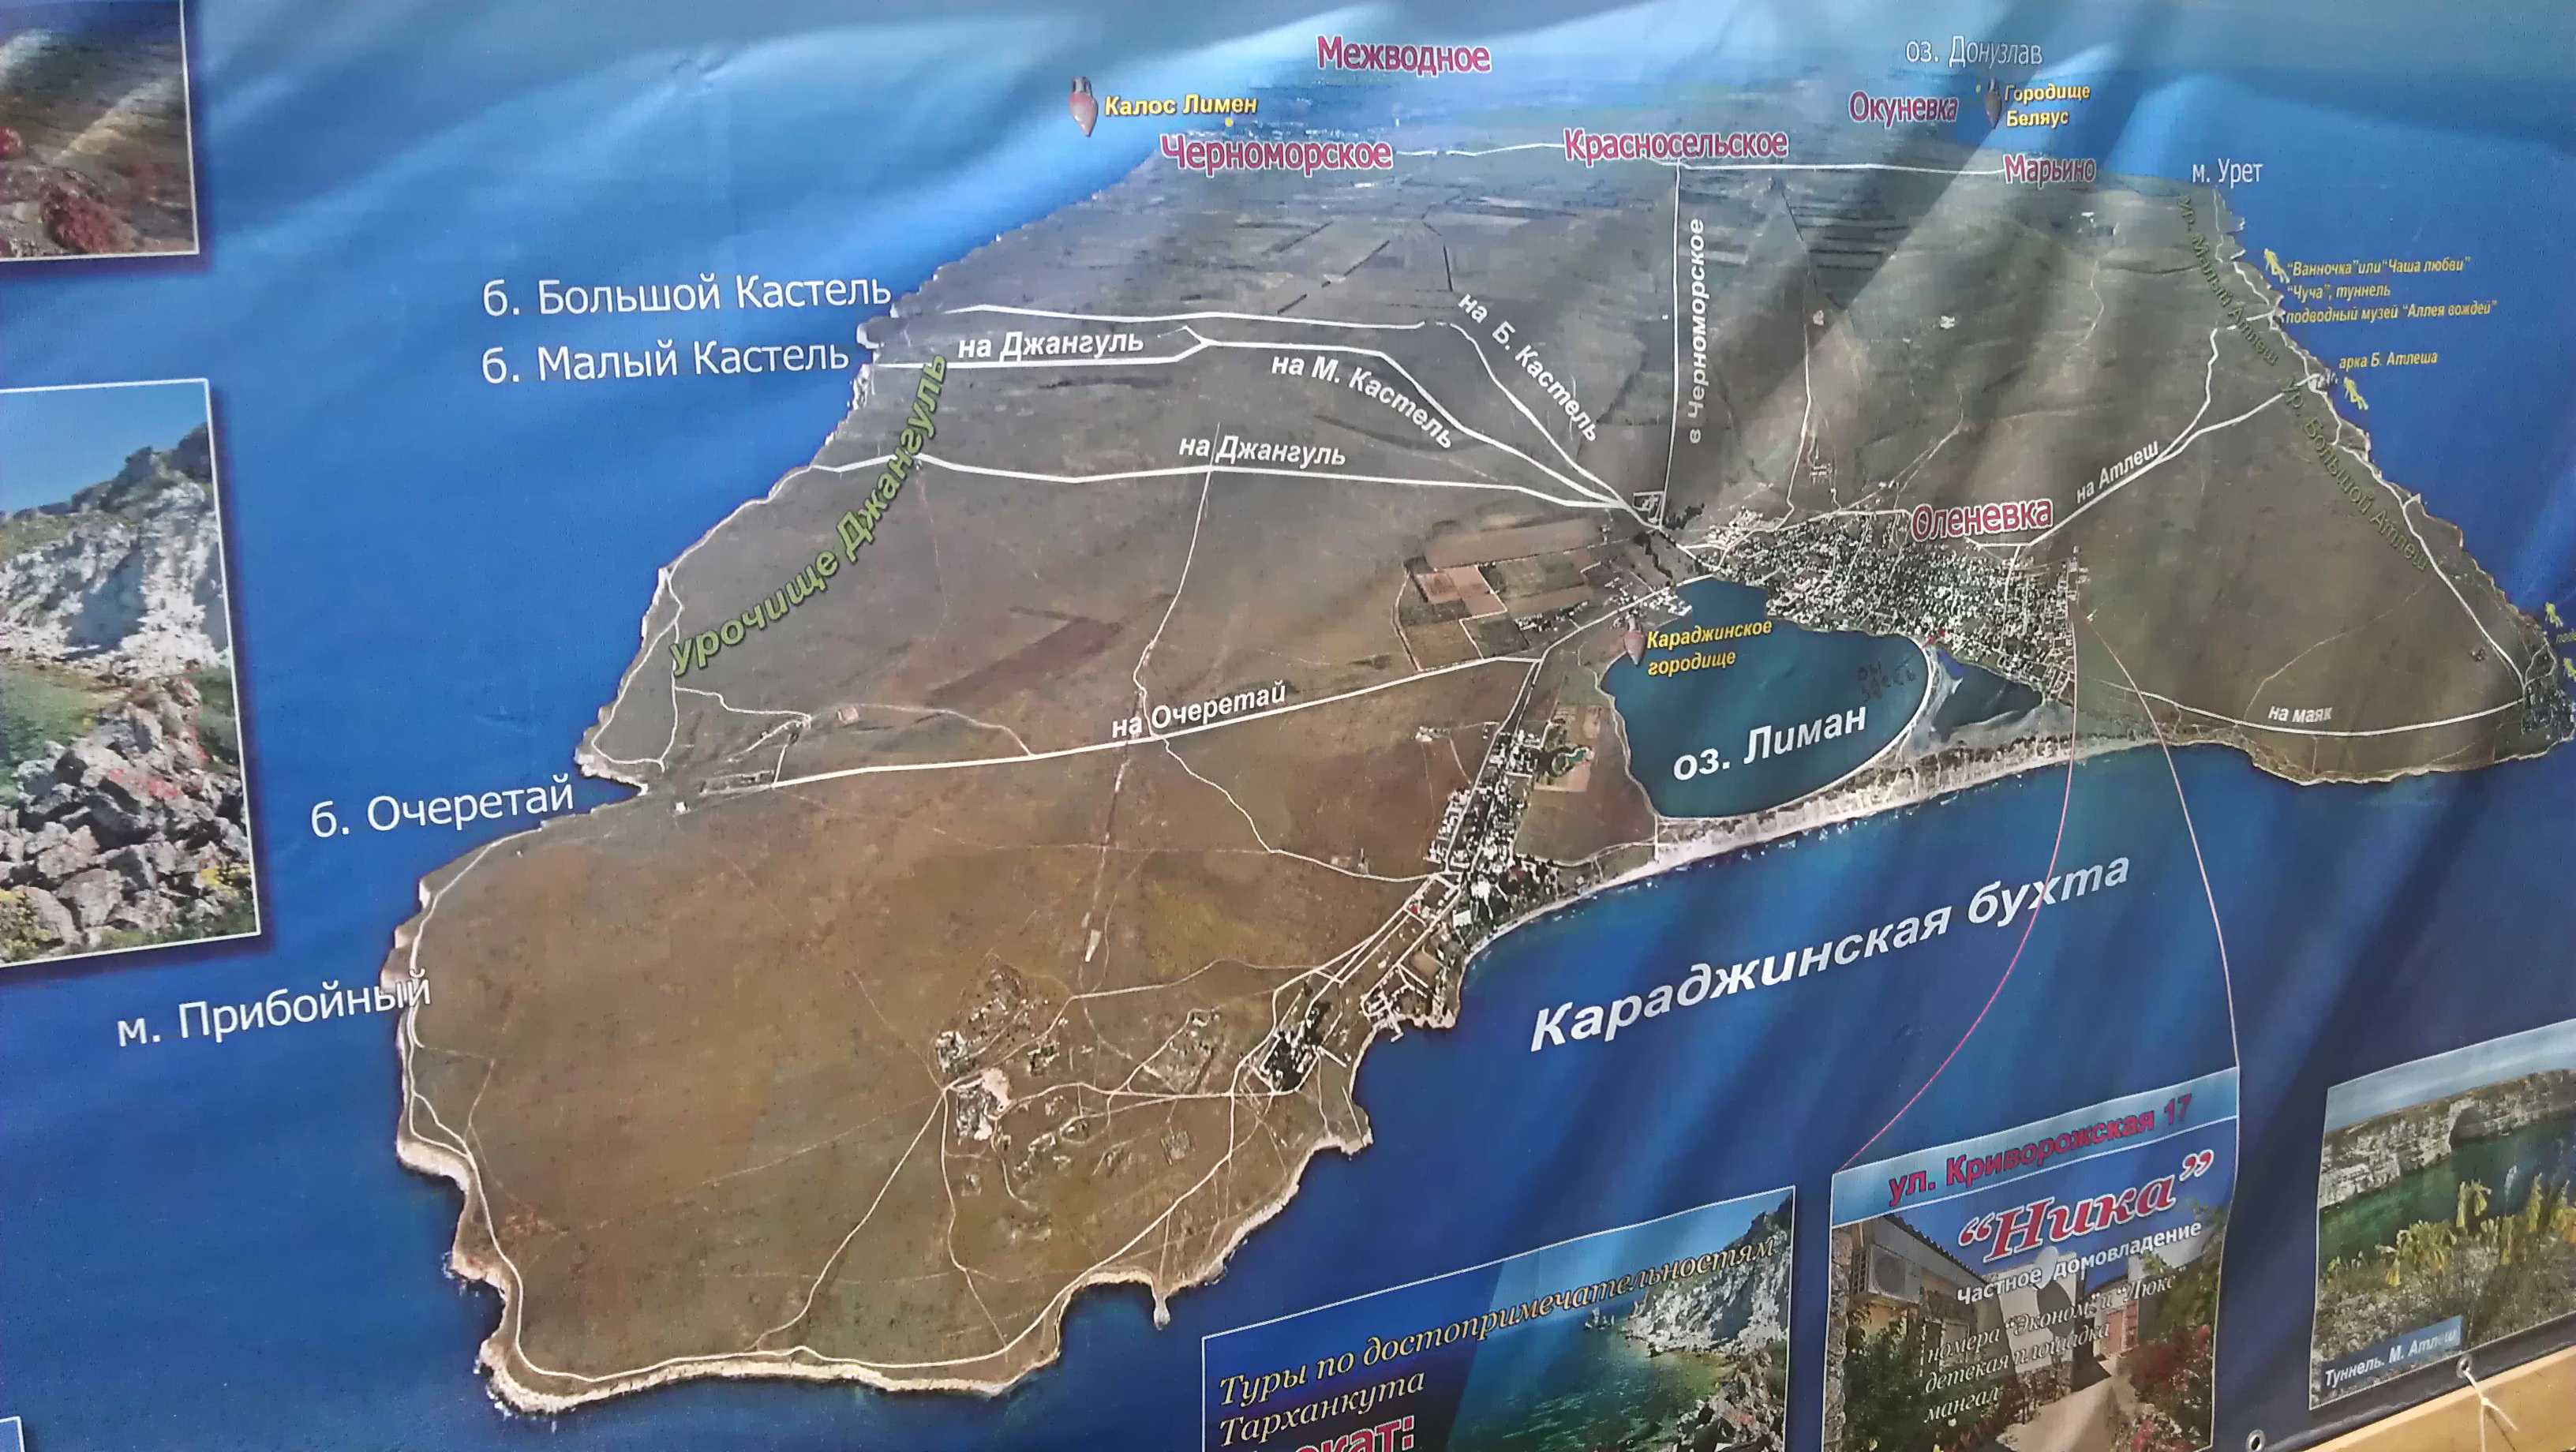 Мыс тарханкут в крыму: фото, где находится на карте тарханкутский полуостров, достопримечательности, отдых